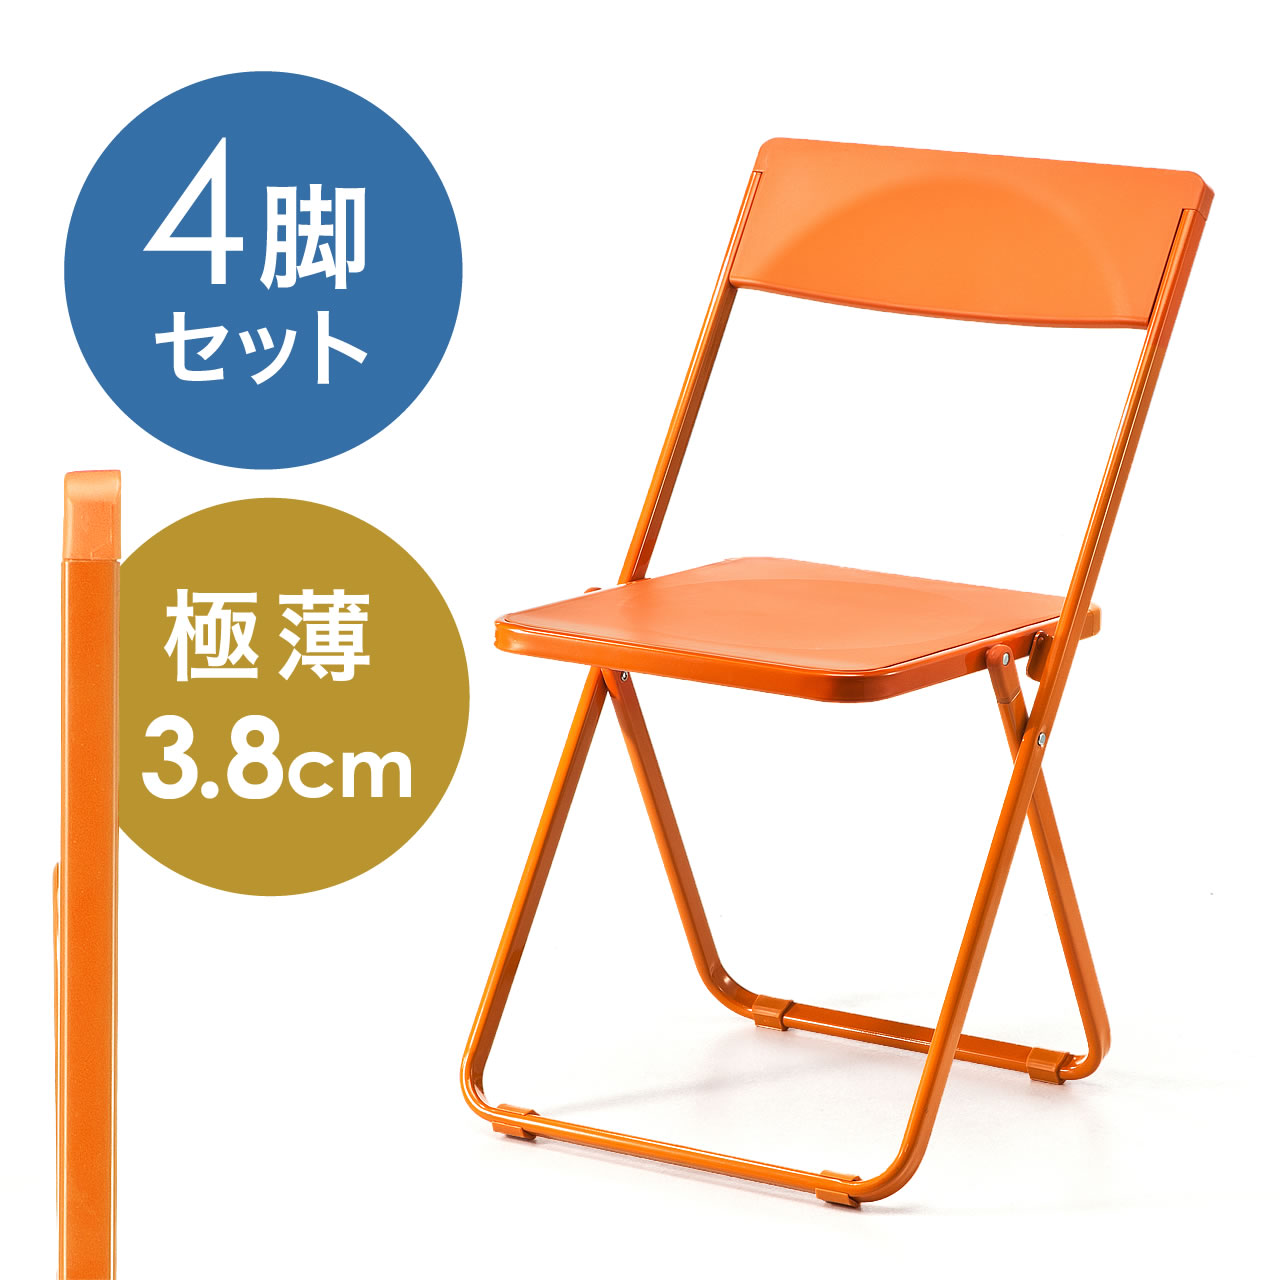 折りたたみ椅子 おしゃれ フォールディングチェア スタッキング可能 Slim 4脚セット オレンジ 150 Snch006dの販売商品 通販ならサンワダイレクト